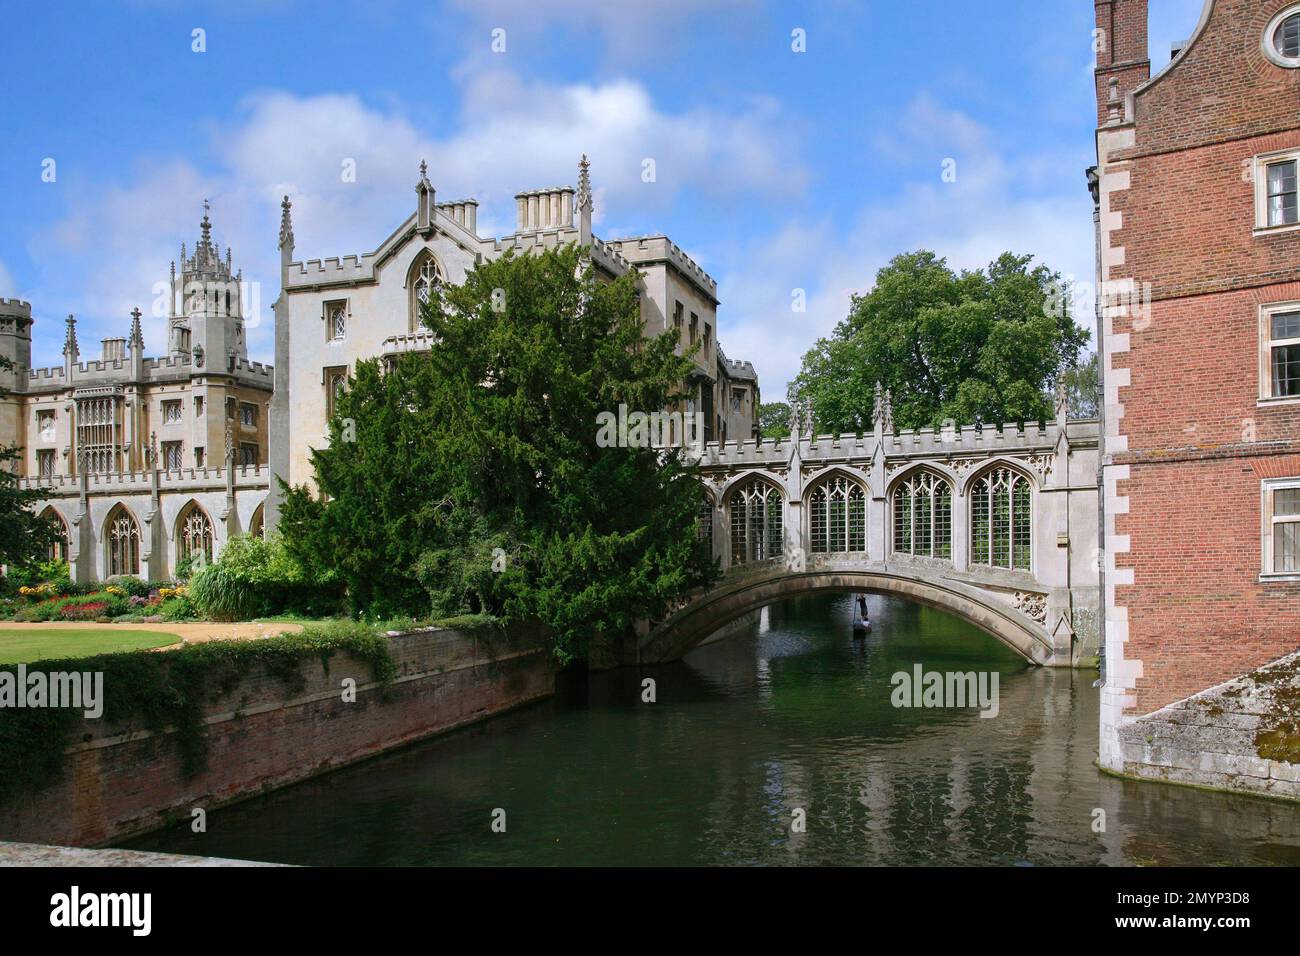 Blick auf die Cambridge University von einer Brücke über den Fluss Cam, mit der überdachten Seufzerbrücke, die zwei Colleges verbindet Stockfoto